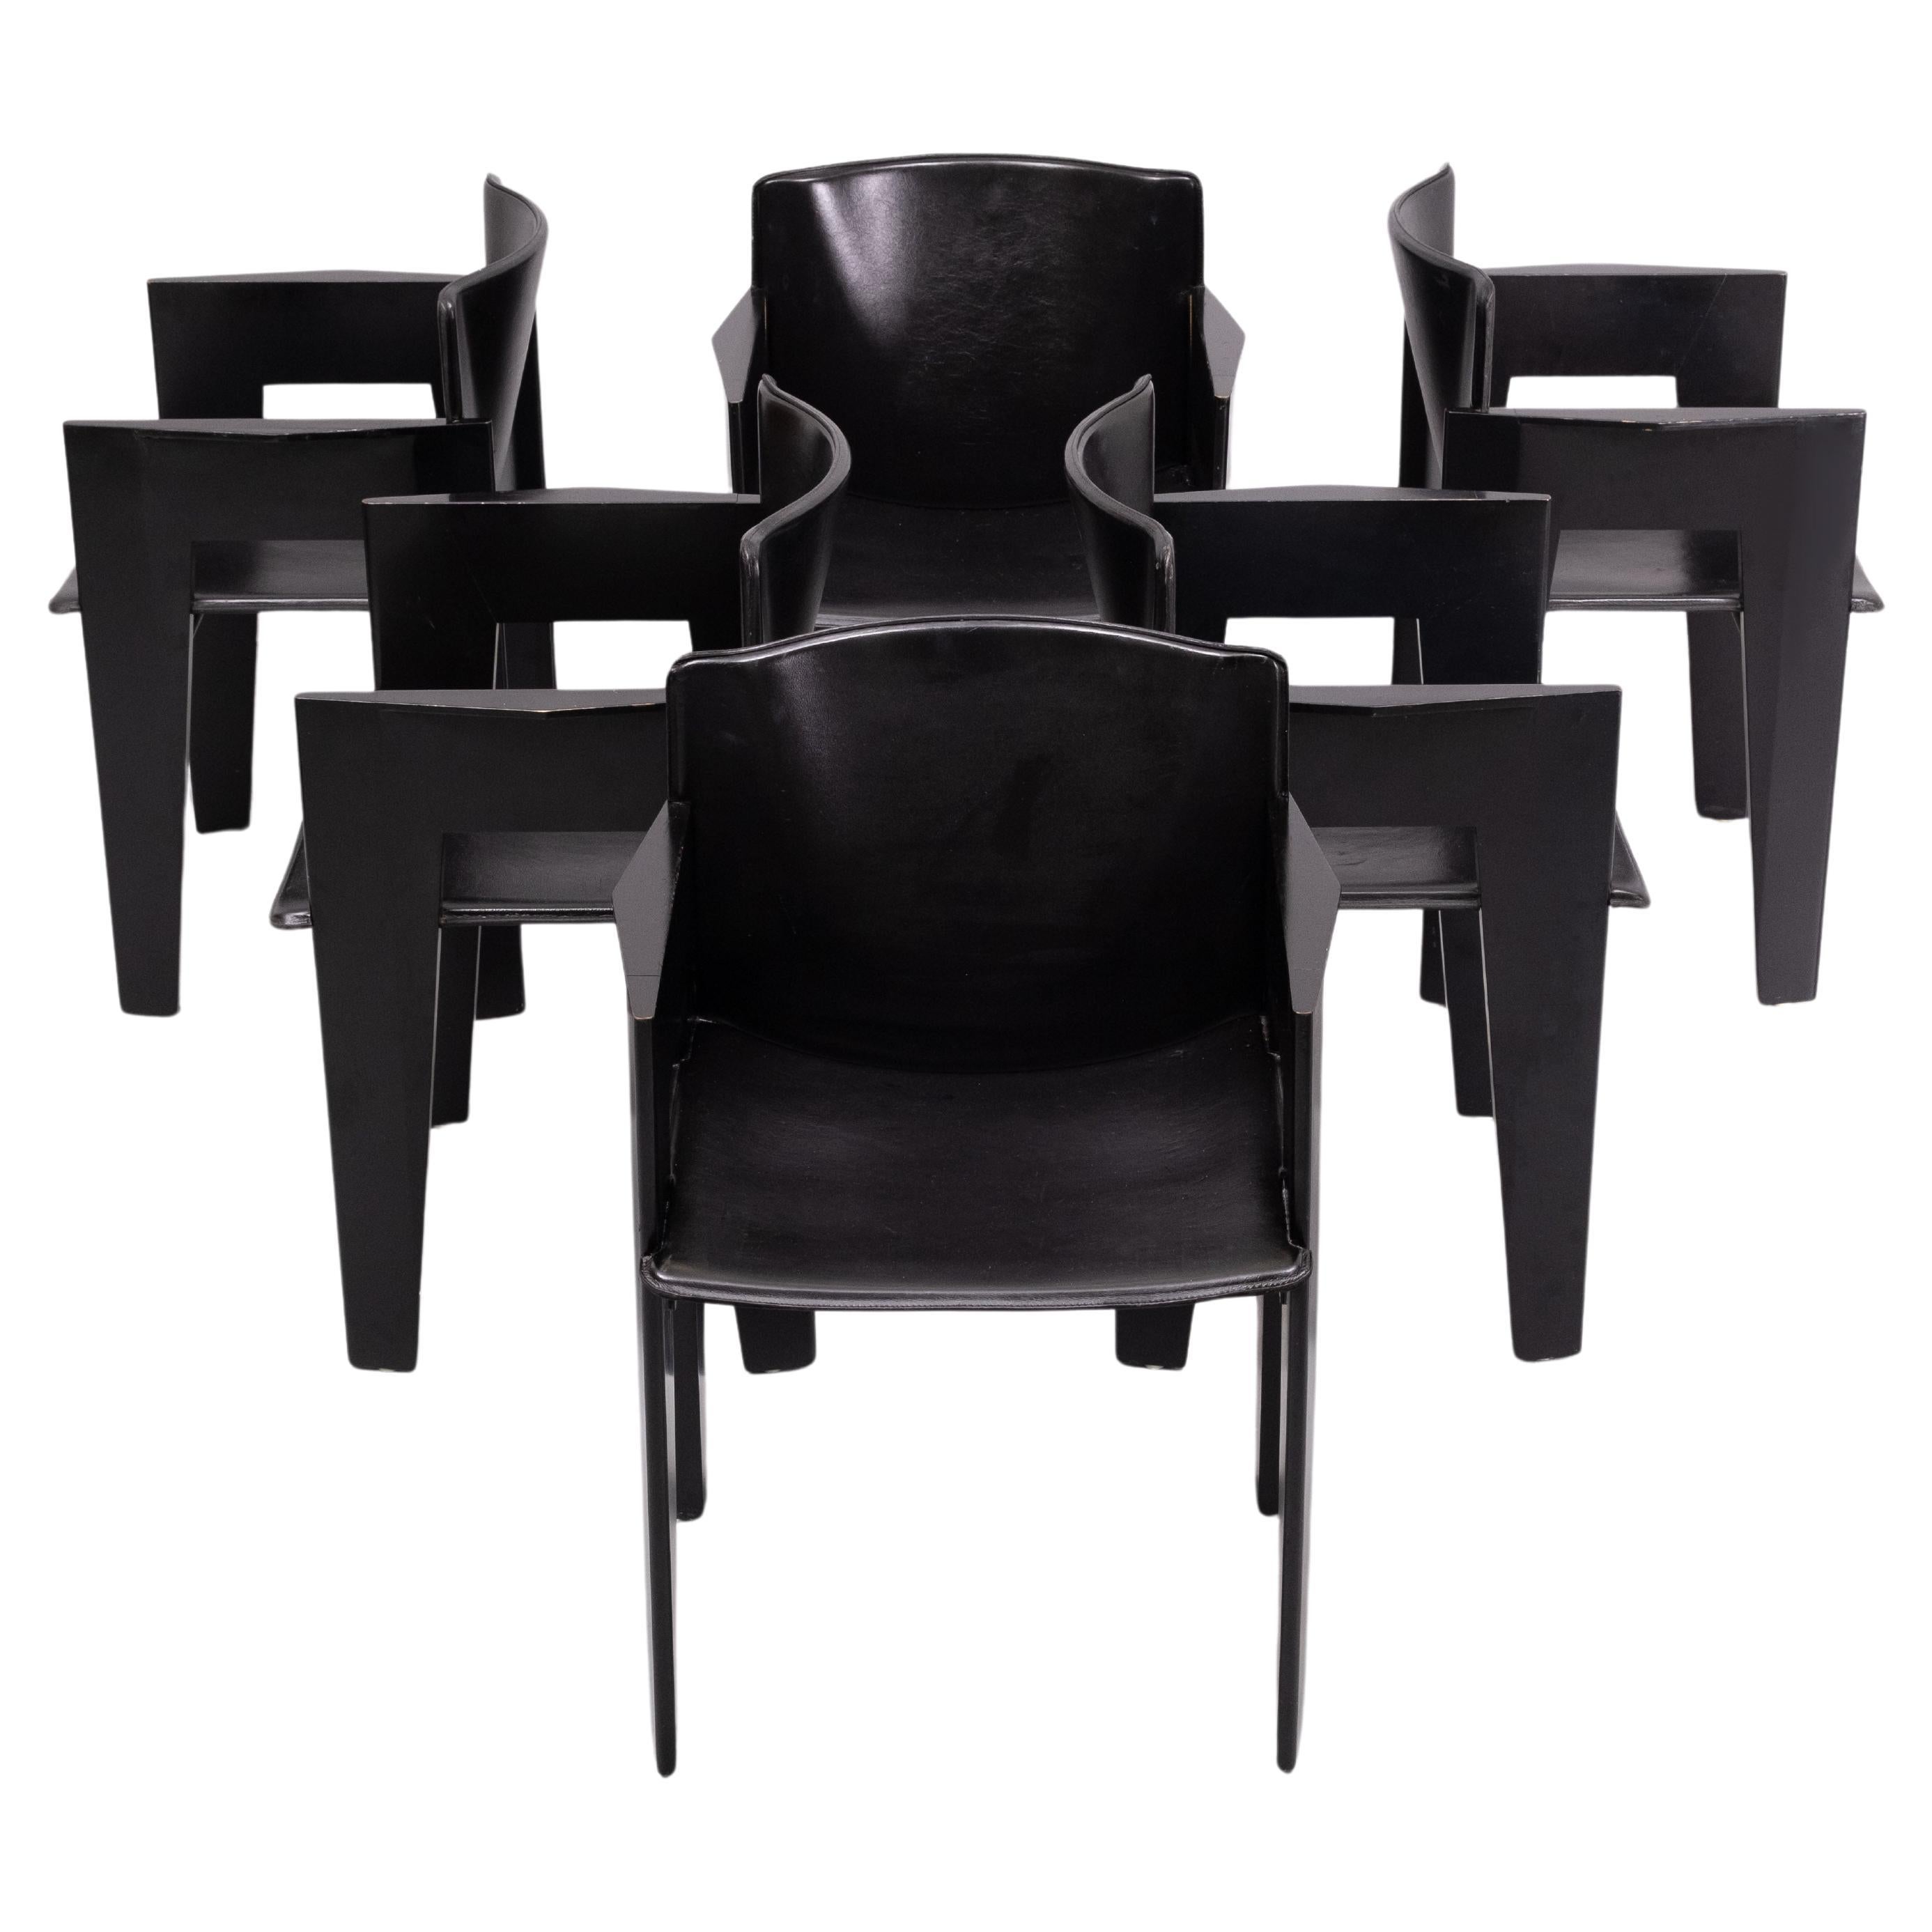 6 Chaise postmoderne par Arco, Pays-Bas, chaises en chêne ébonisé et cuir sellier, fauteuil inhabituel des années 1980 conçu par un architecte néerlandais. L'aspect sculptural et élégant, associé à des matériaux de qualité, en font un produit très